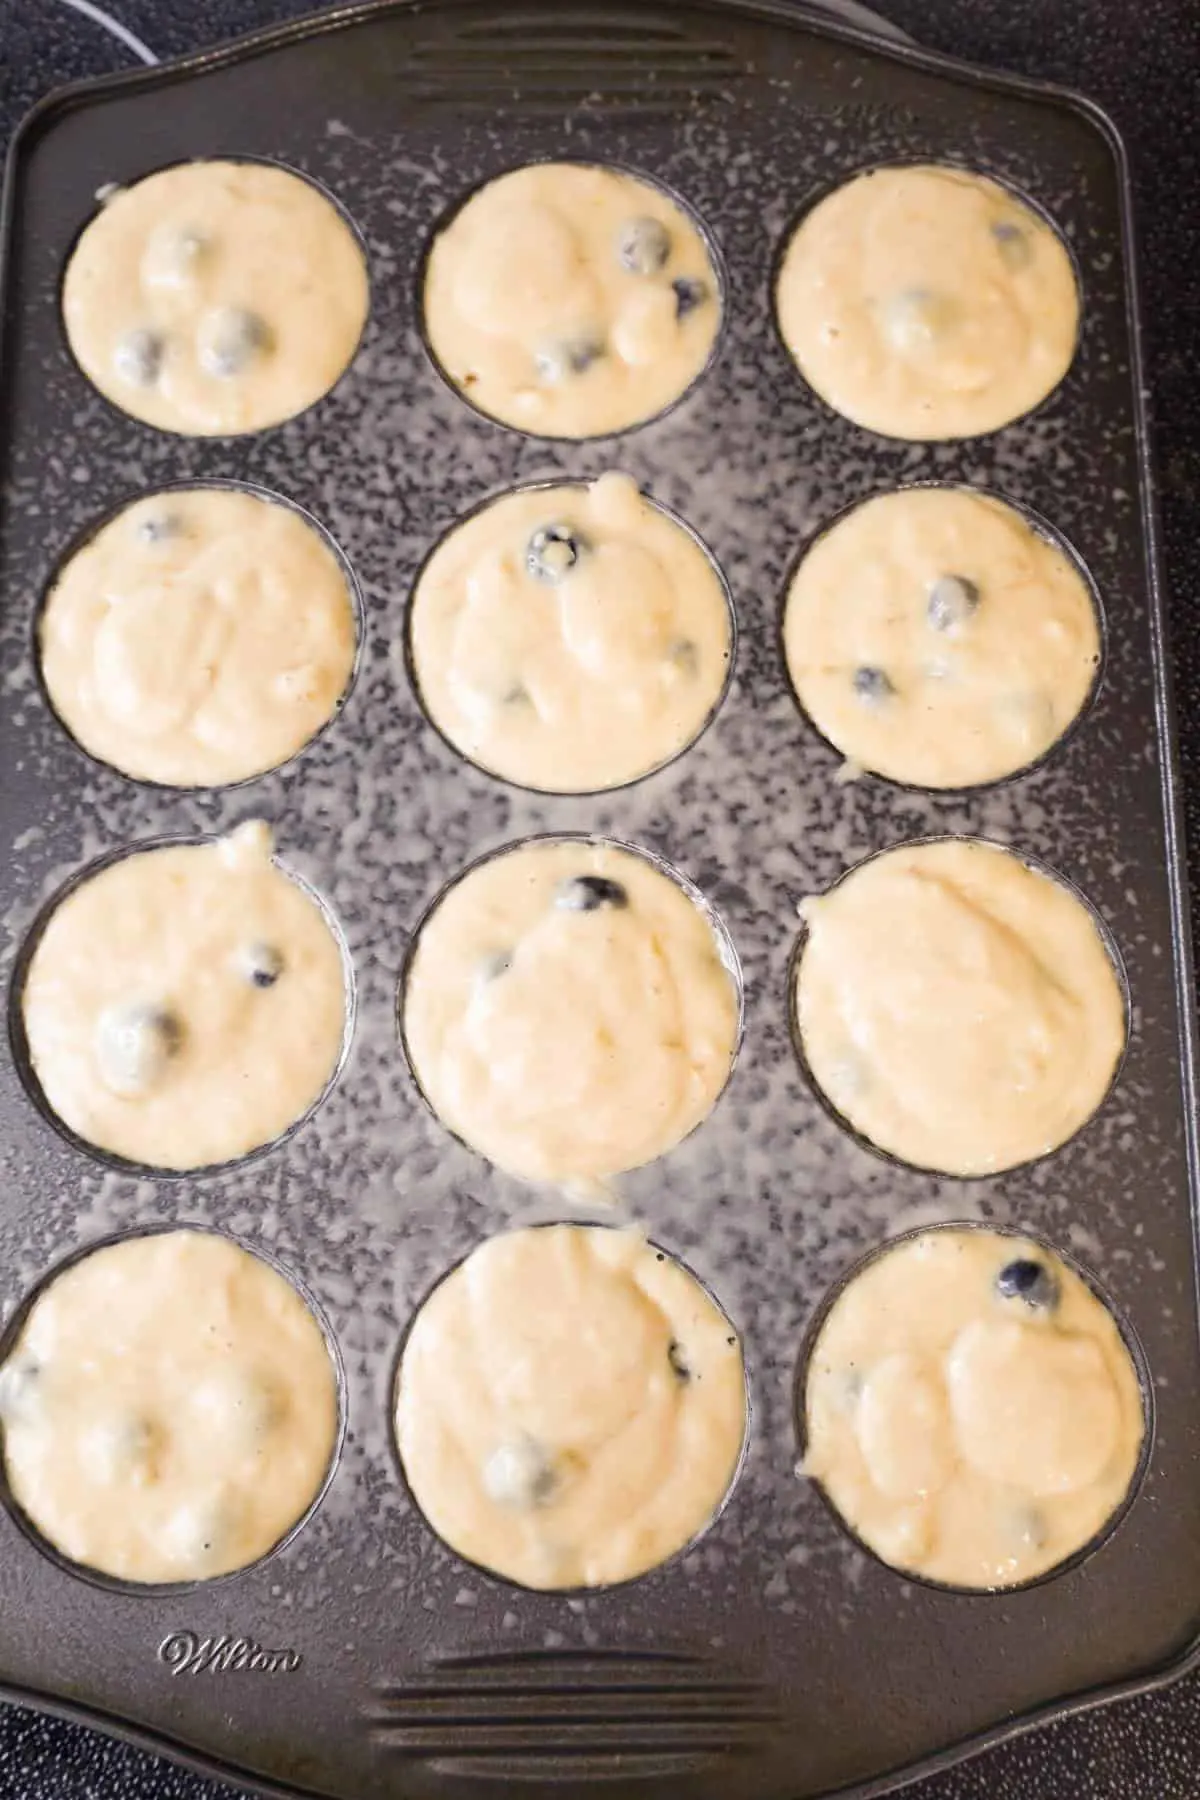 banana blueberry muffin batter in a muffin tin